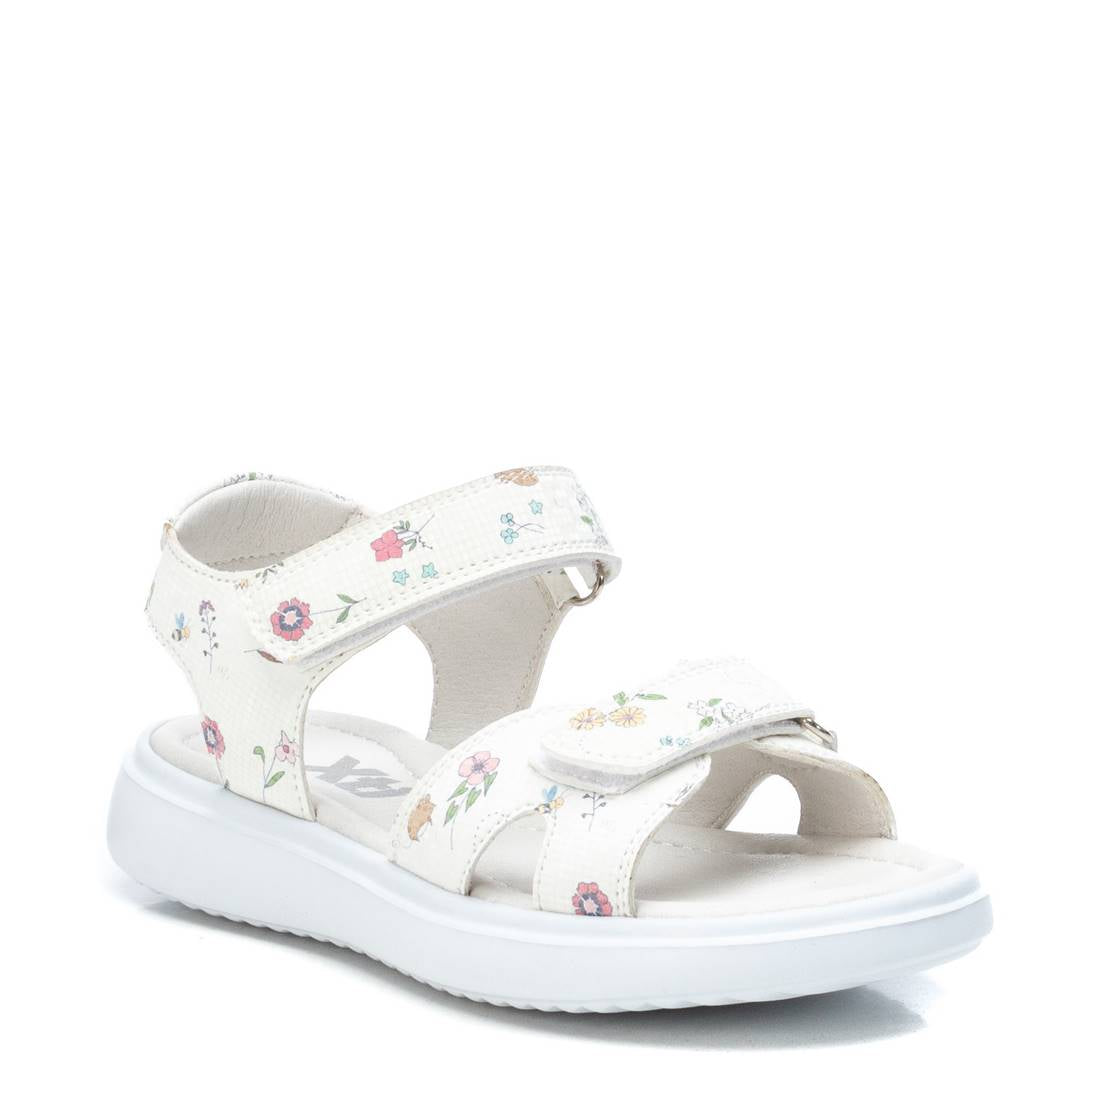 Giày Sandals Kids PU Floral Trắng S31